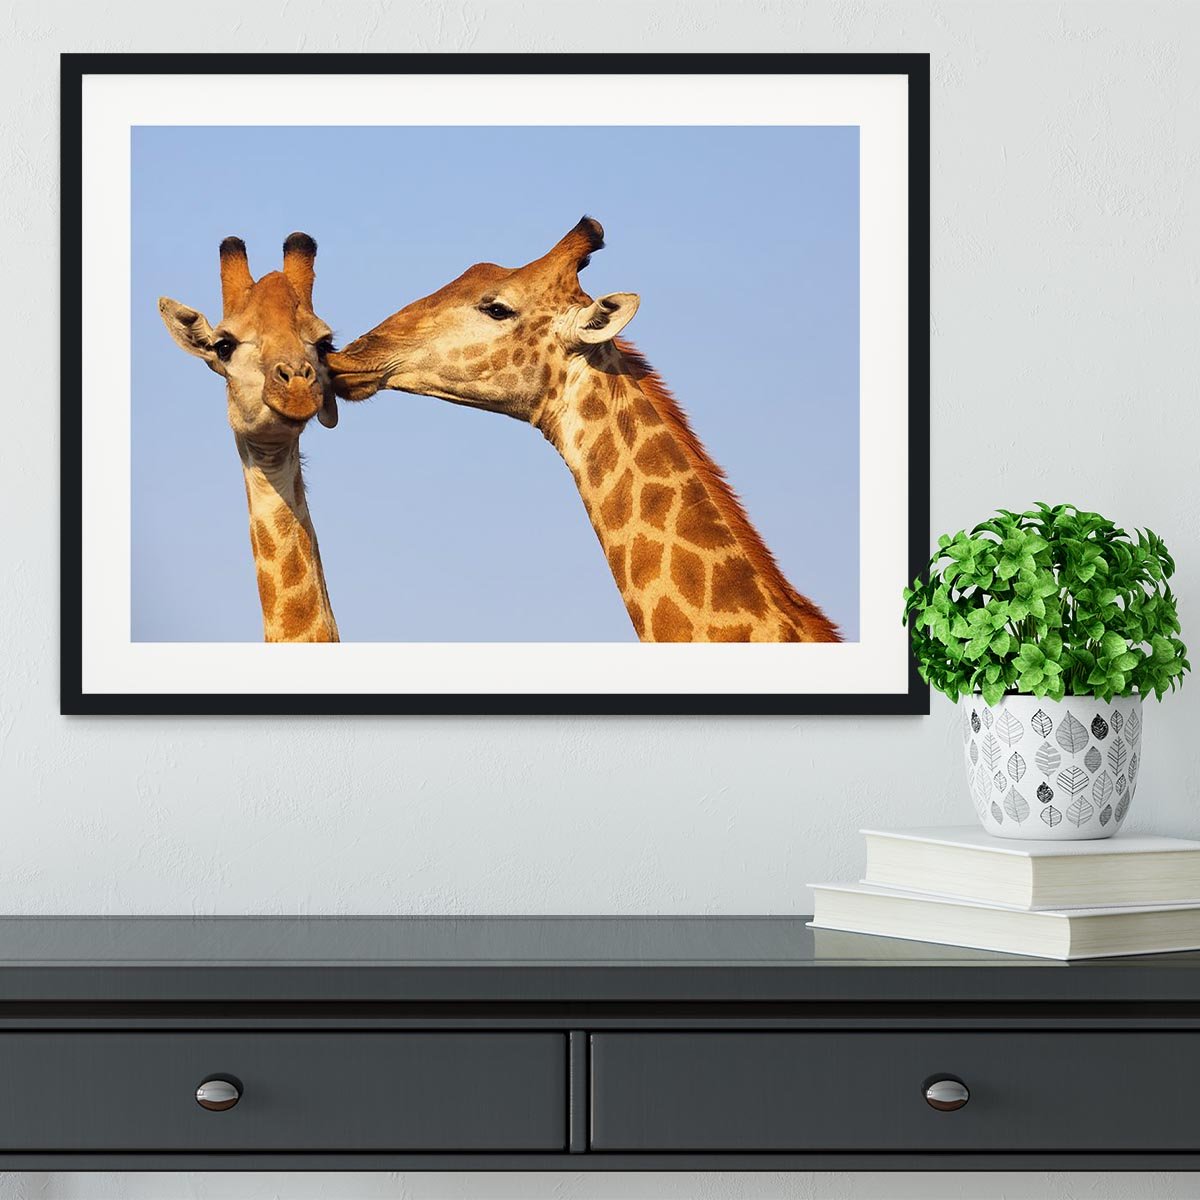 Giraffe pair bonding Framed Print - Canvas Art Rocks - 1